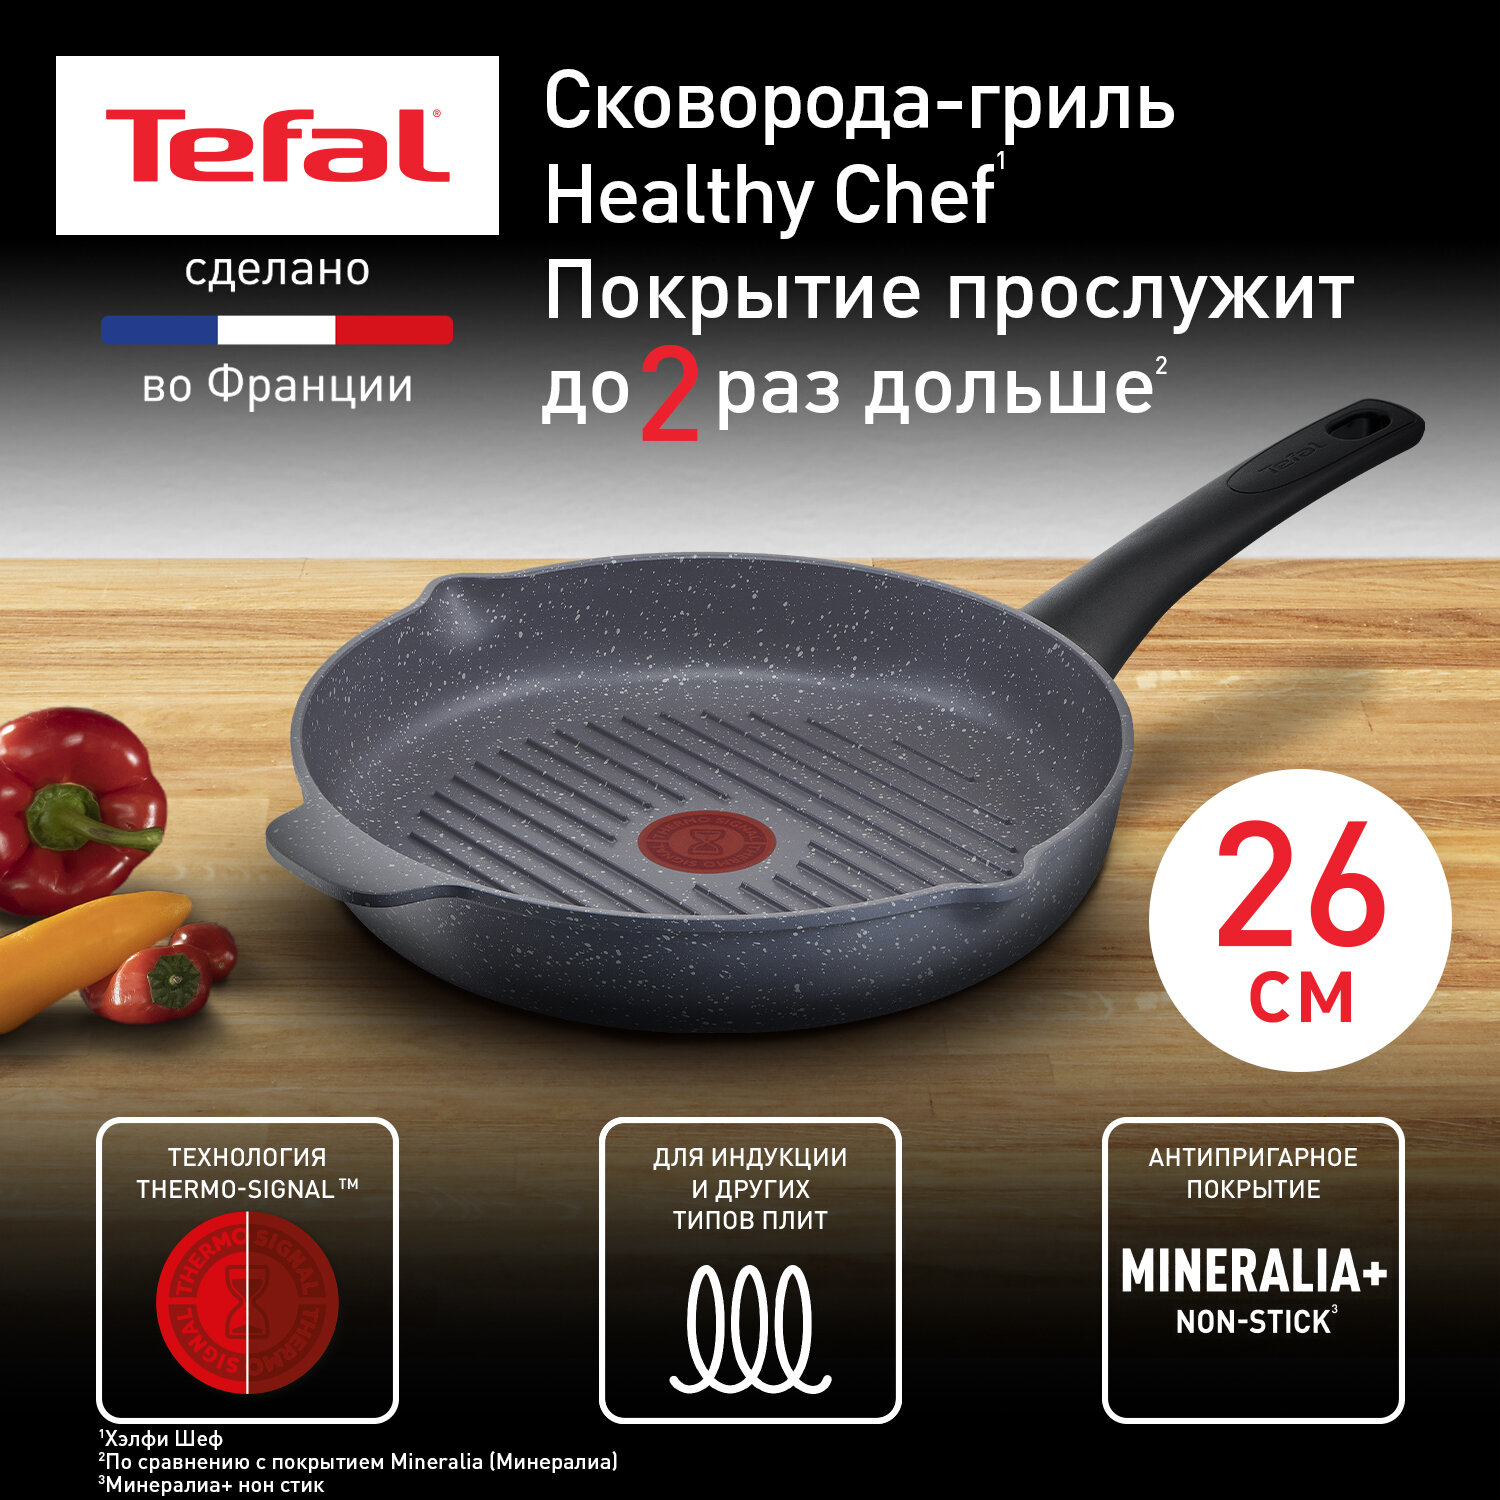 Сковорода Tefal Healthy Chef G1500572, 26 см, с индикатором температуры, с антипригарным покрытием, подходит для индукции, сделано во Франции